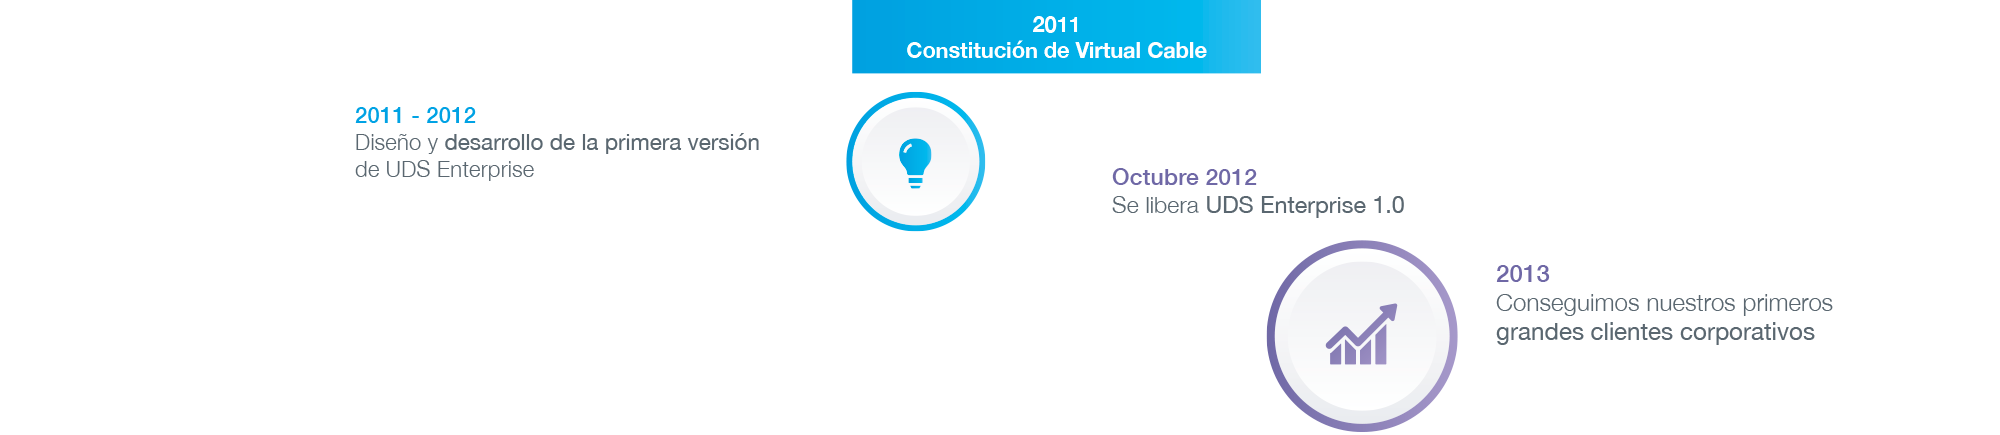 Hitos en la virtualización de escritorios (2011 -2013) | Virtual Cable